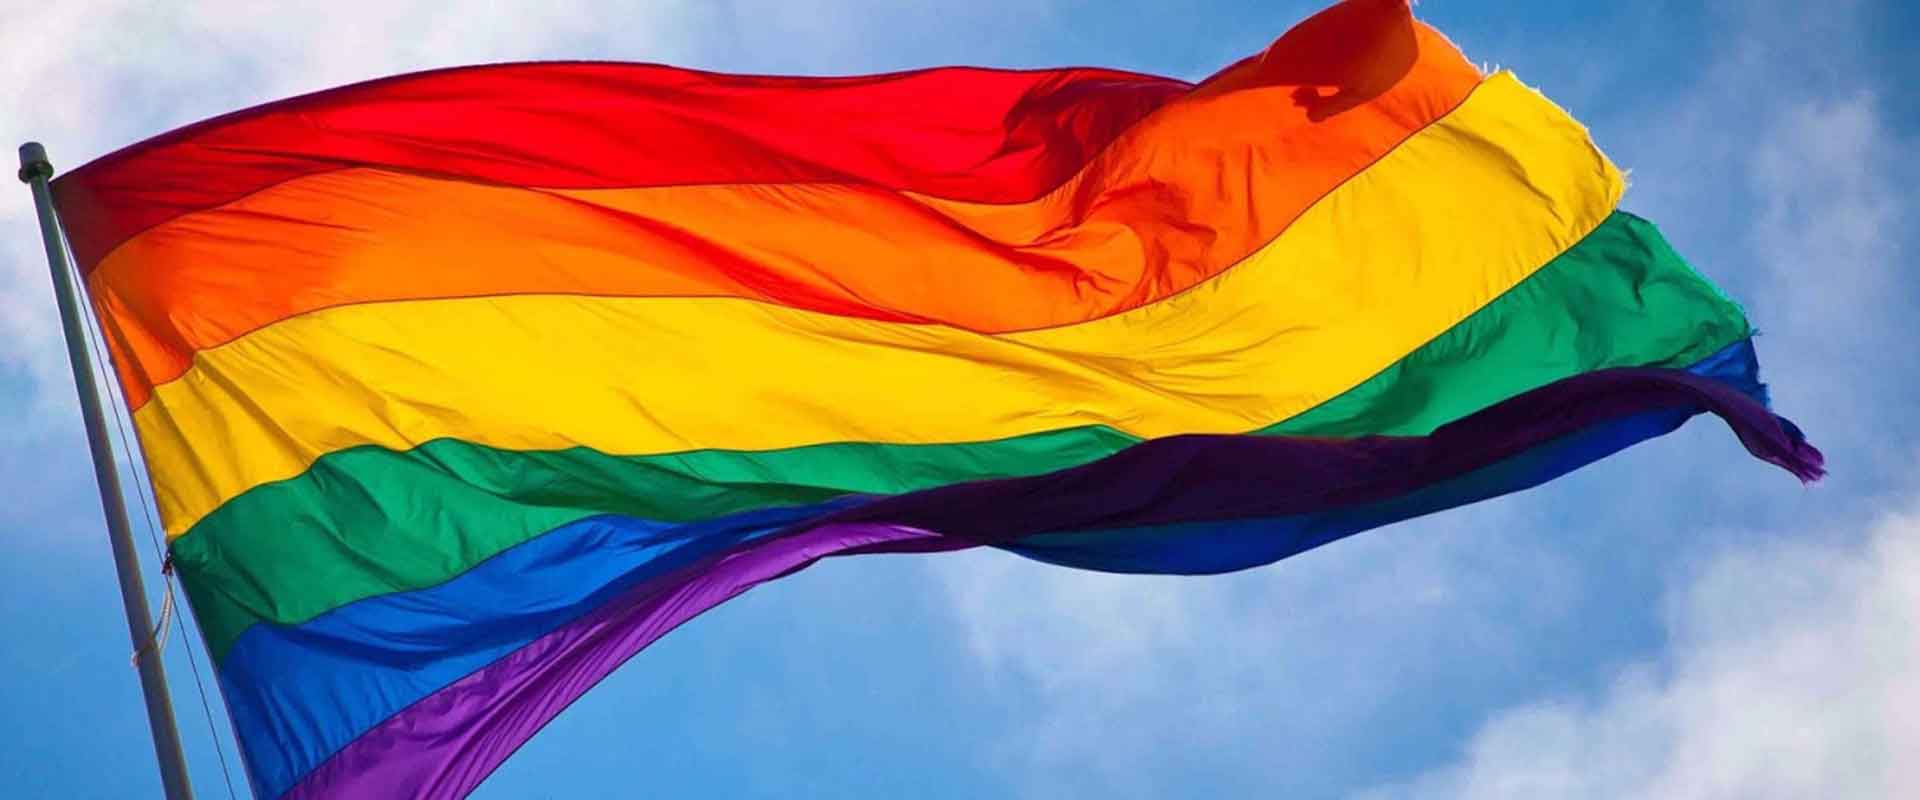 Tudo sobre a 2ª Parada do Orgulho LGBT de Santos - Revista ...